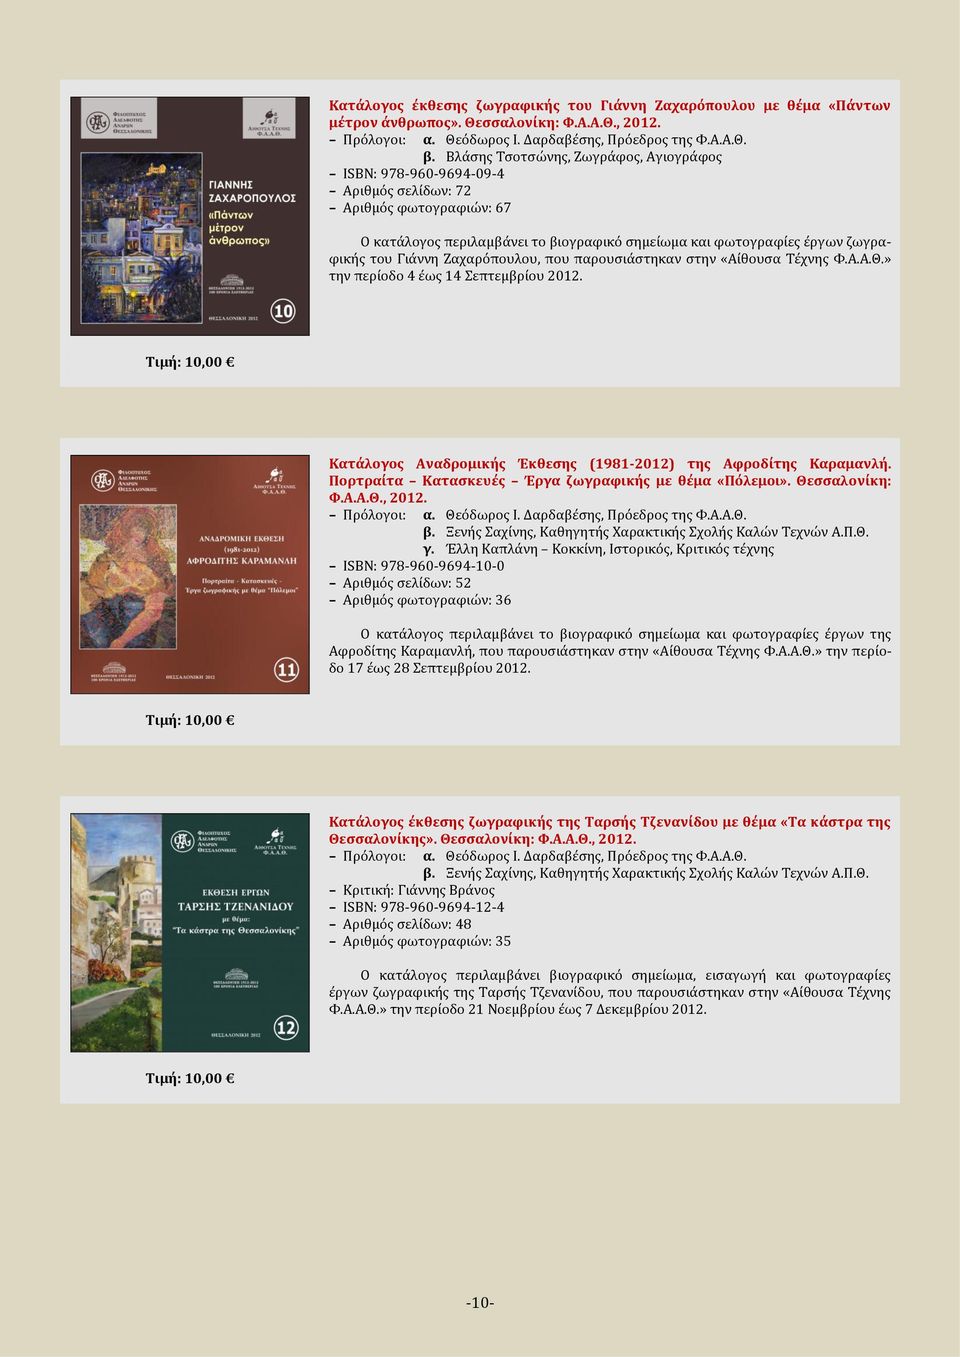 Ζαχαρόπουλου, που παρουσιάστηκαν στην «Αίθουσα Τέχνης Φ.Α.Α.Θ.» την περίοδο 4 έως 14 Σεπτεμβρίου 2012. Κατάλογος Αναδρομικής Έκθεσης (1981-2012) της Αφροδίτης Καραμανλή.